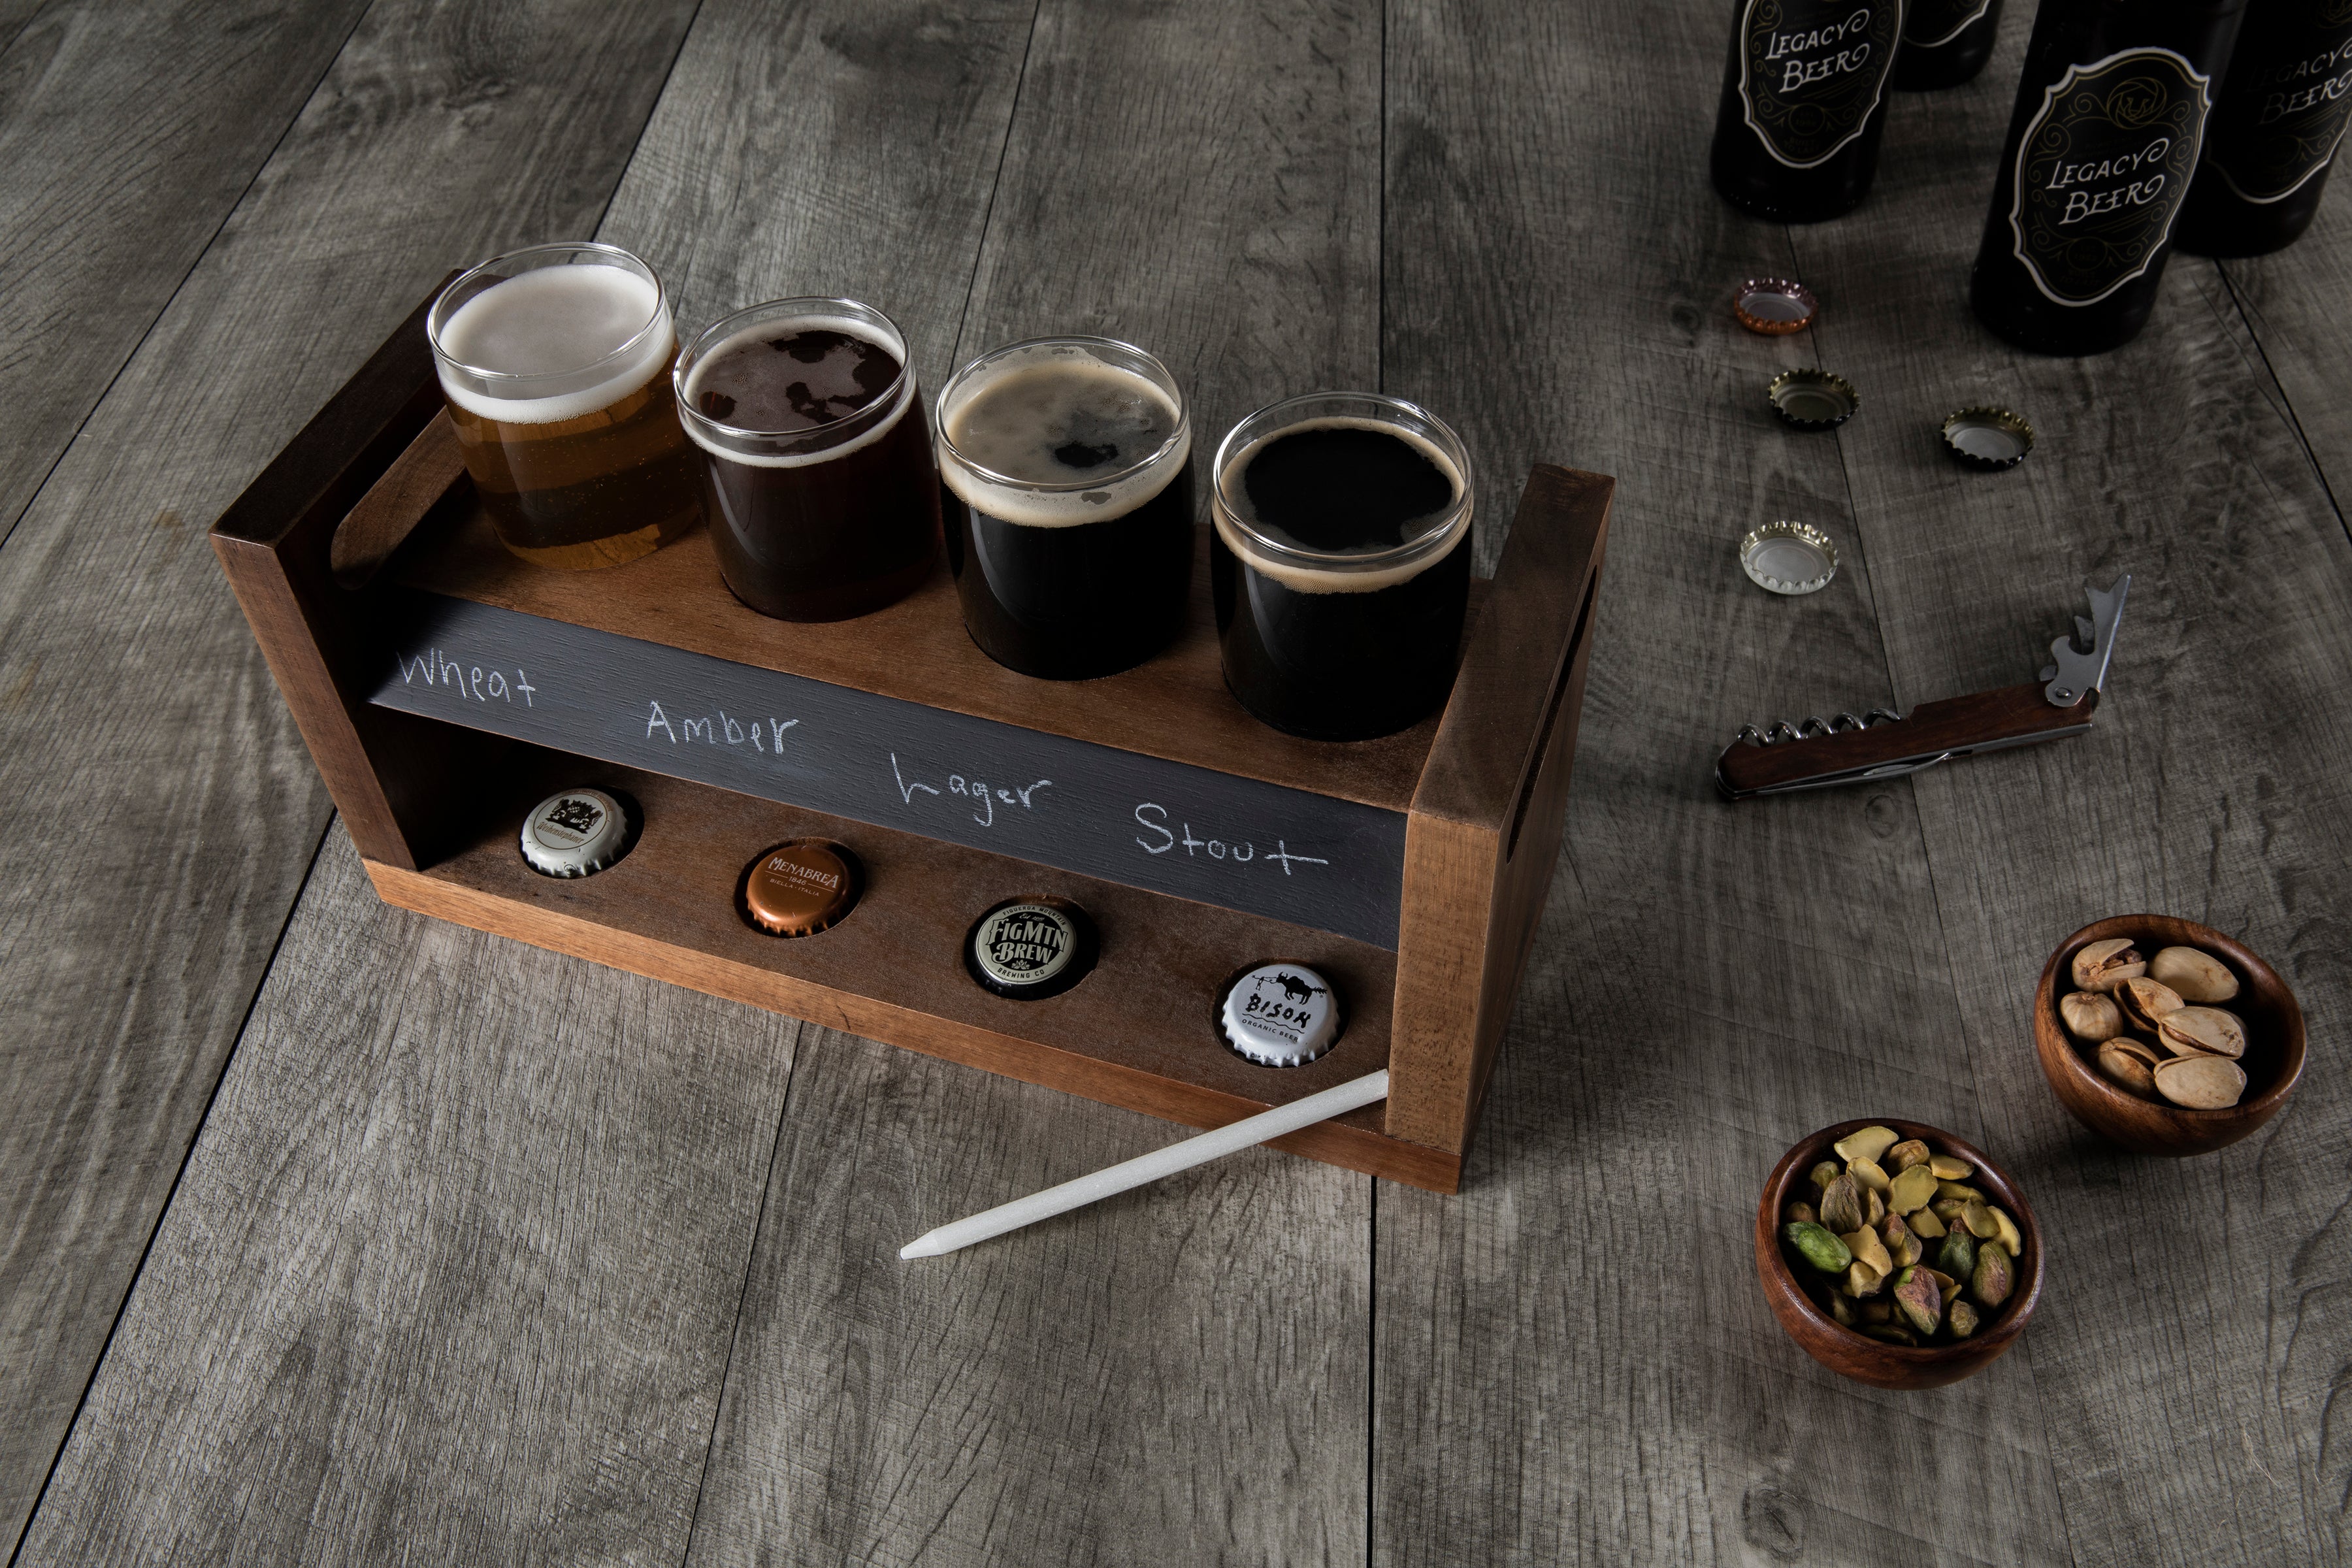 Carolina Panthers - Craft Beer Flight Beverage Sampler